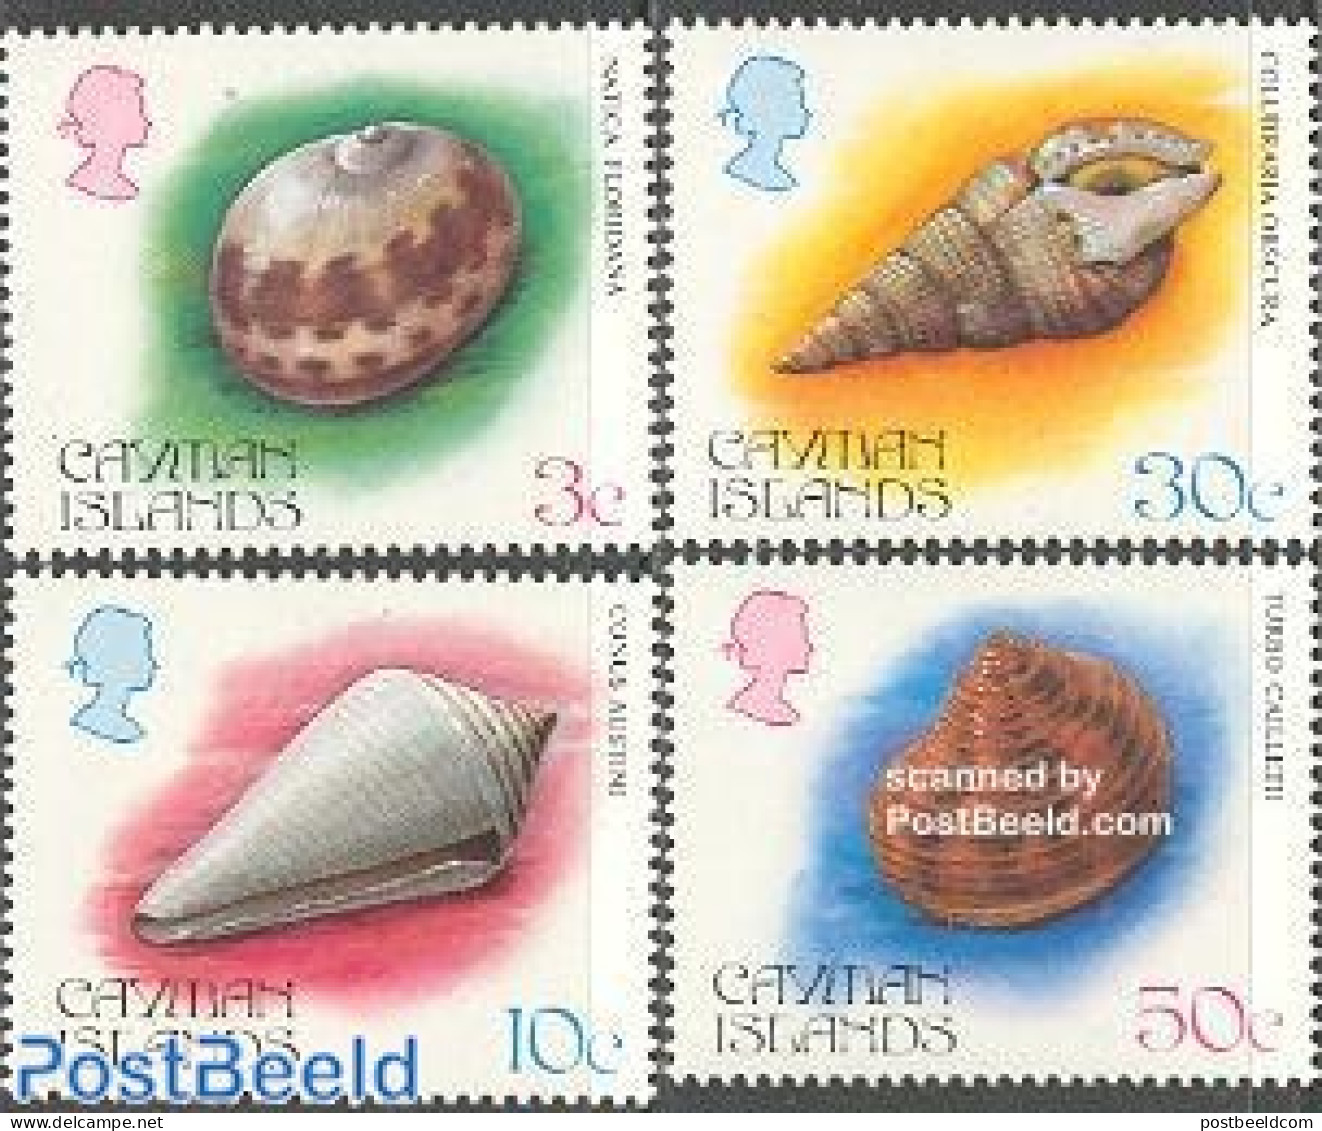 Cayman Islands 1984 Shells 4v, Mint NH, Nature - Shells & Crustaceans - Vita Acquatica